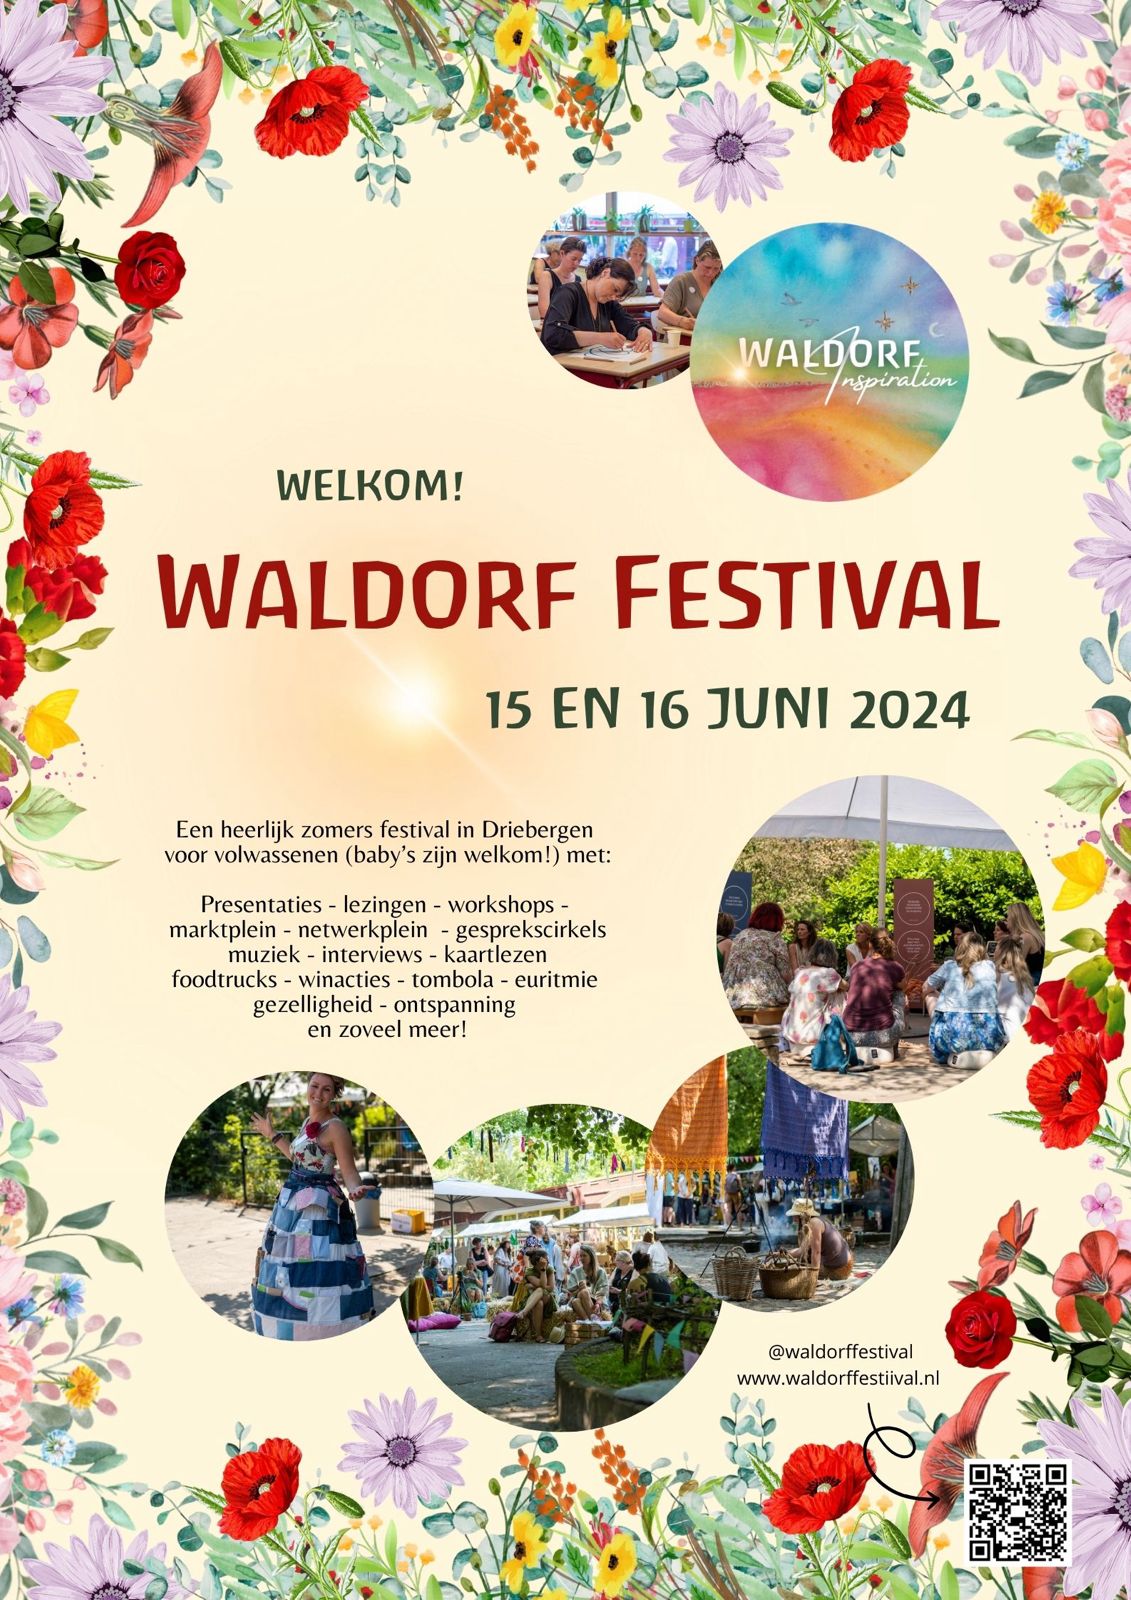 Waldorf festival – VS de Vuurvogel – Driebergen